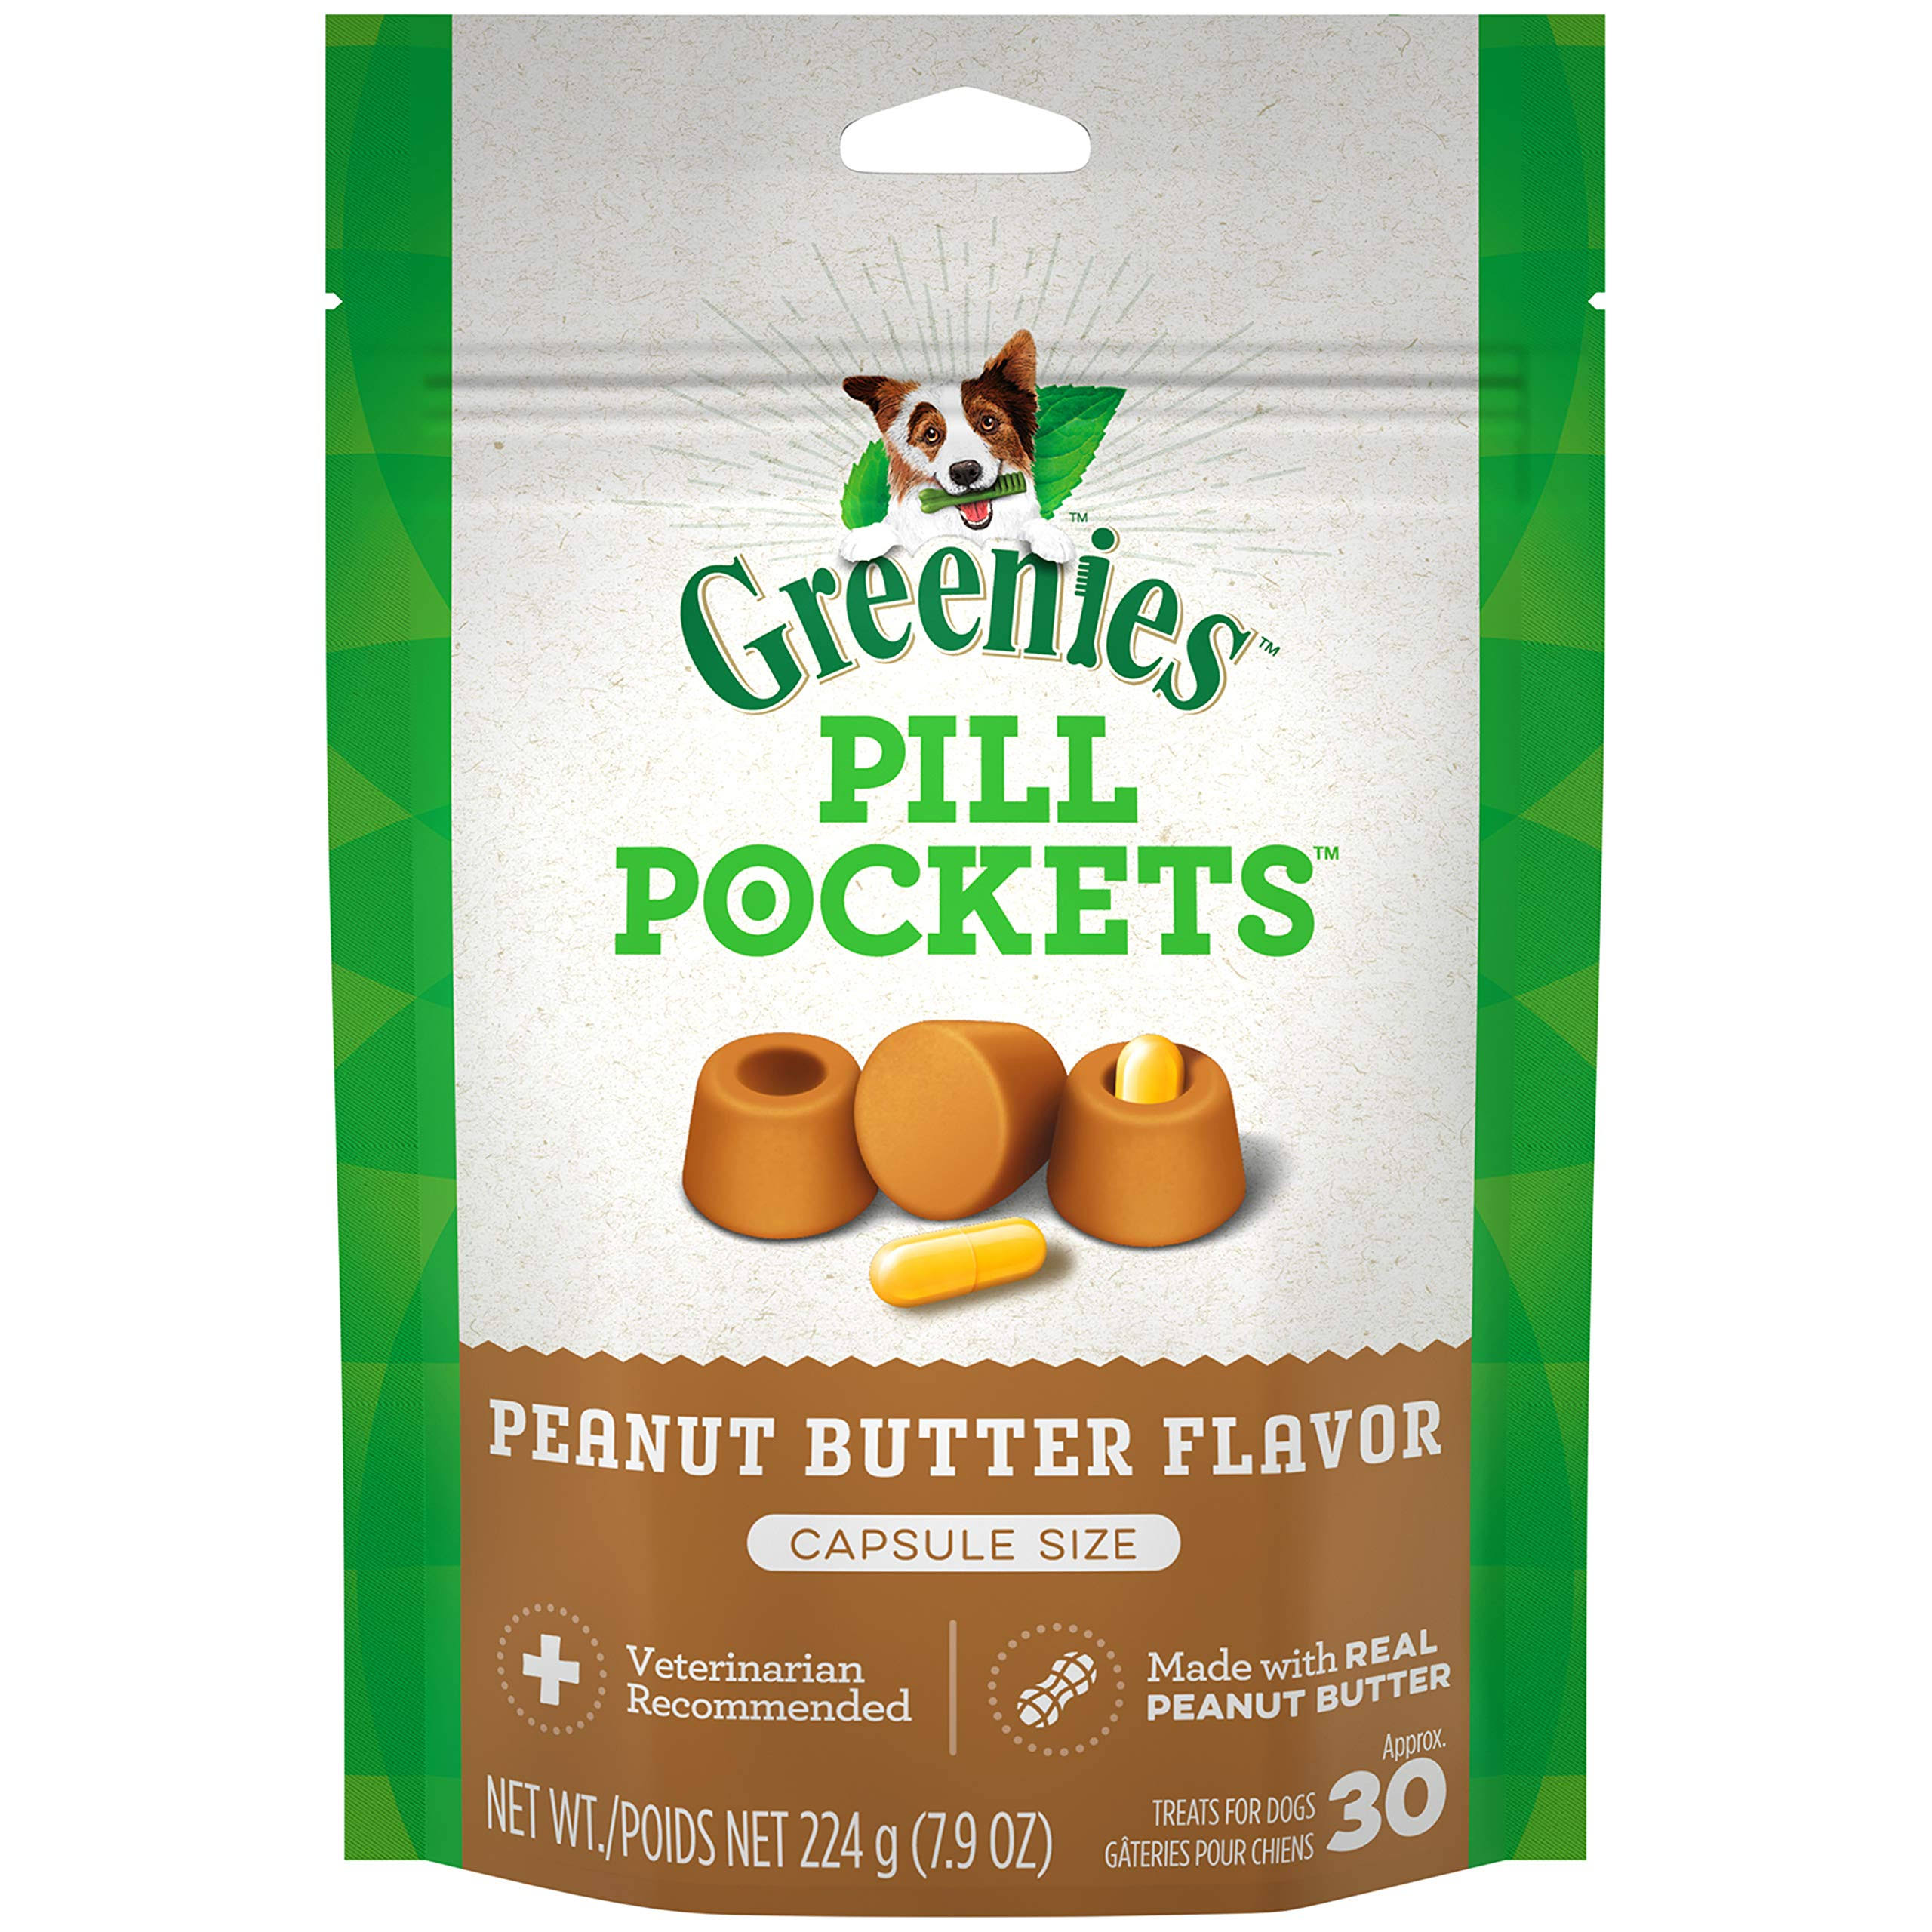 Greenies Pill Pockets Peanut Butter